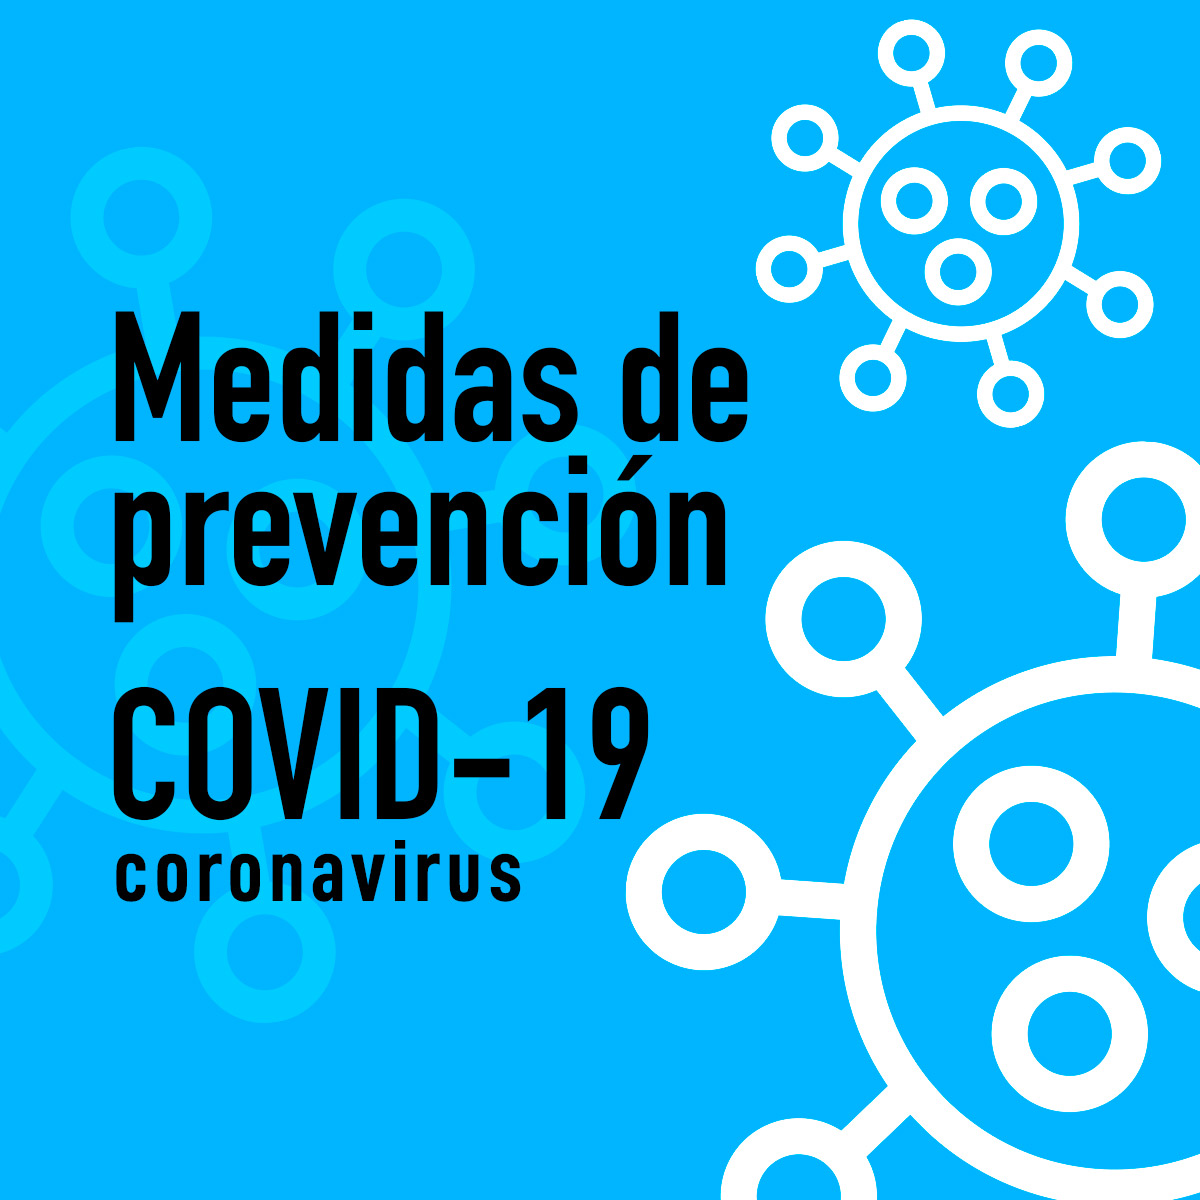 Medidas de prevención COVID-19 - COVID 19